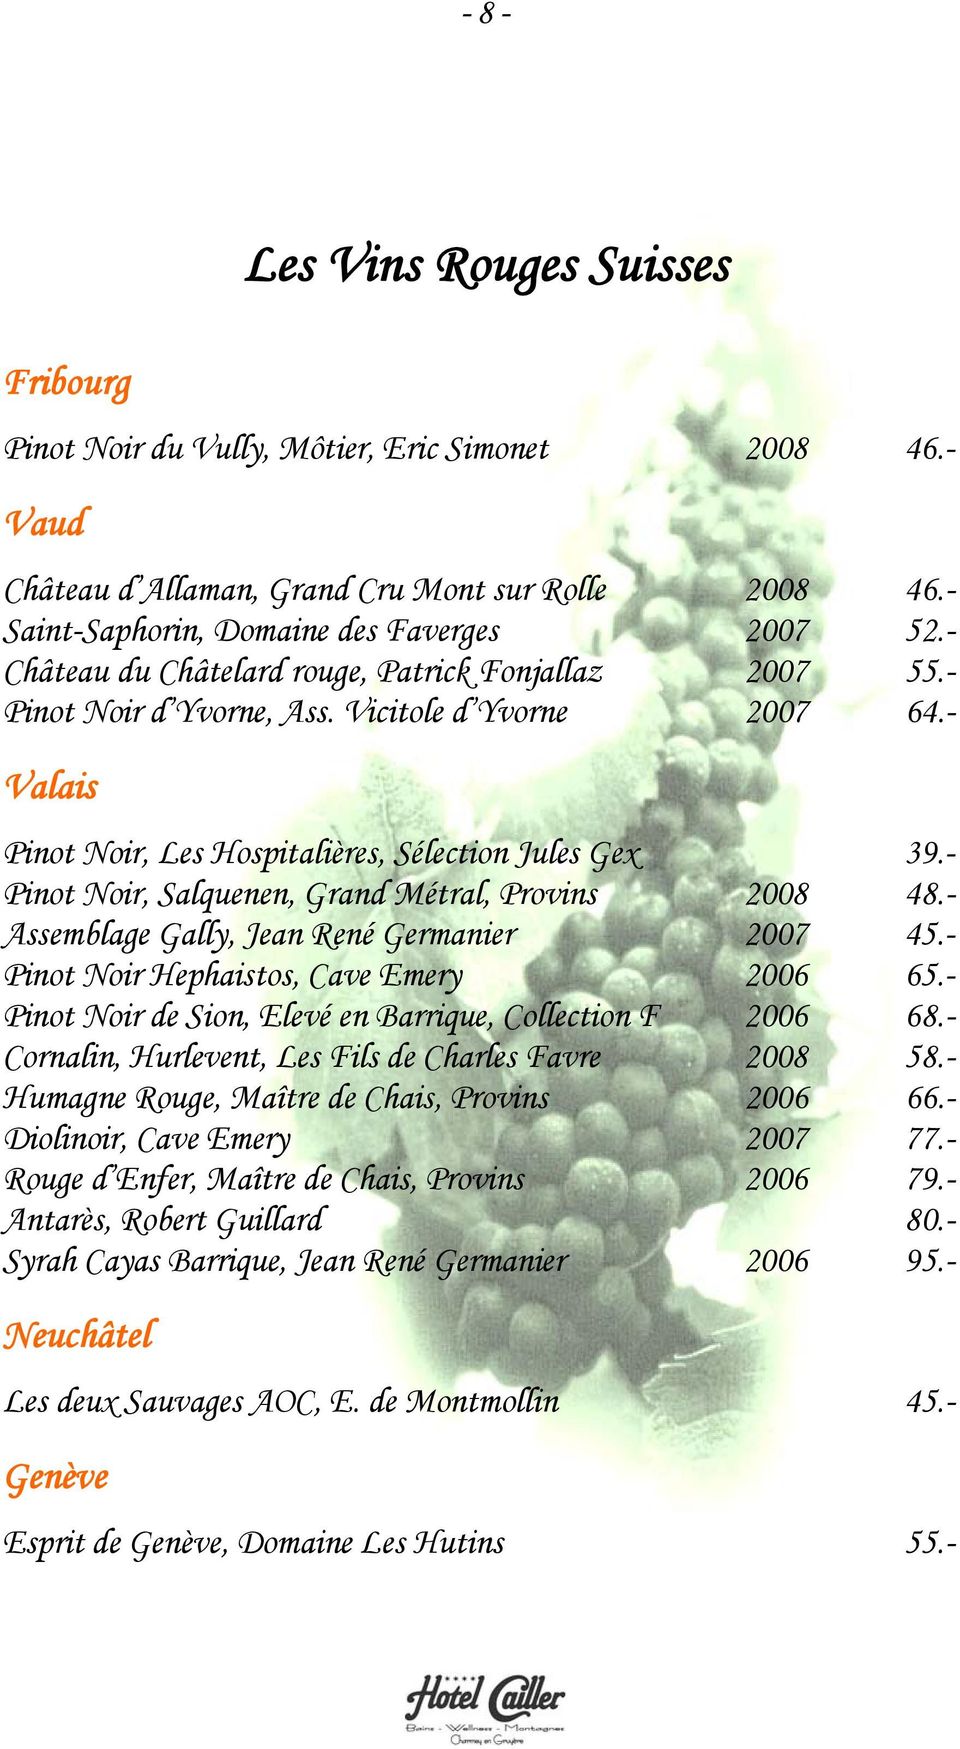 - Pinot Noir, Salquenen, Grand Métral, Provins 2008 48.- Assemblage Gally, Jean René Germanier 2007 45.- Pinot Noir Hephaistos, Cave Emery 2006 65.